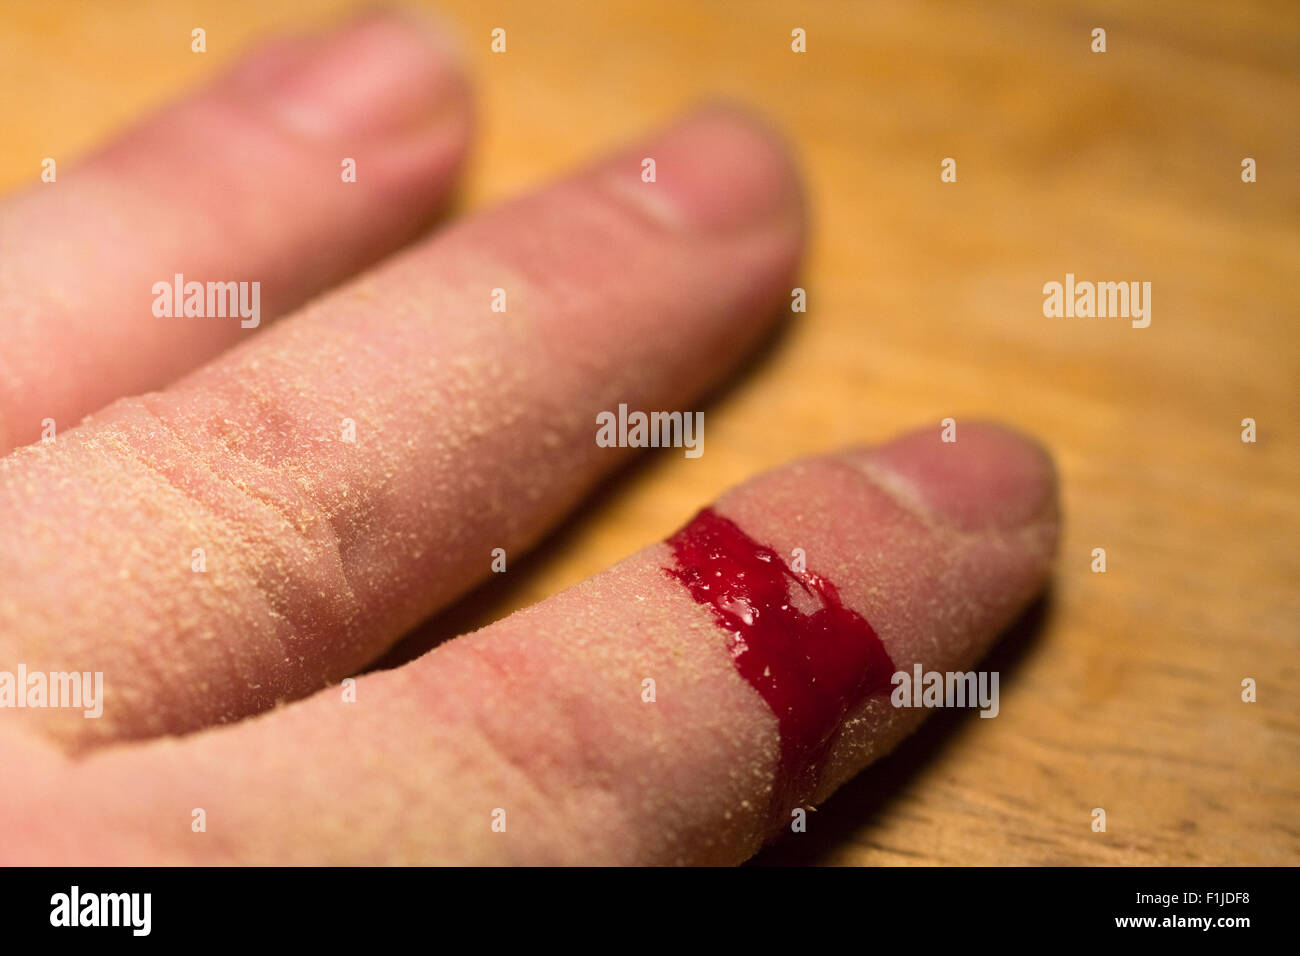 Un hombre del dedo índice cubierto con aserrín, mientras que la sangre fluye de una herida abierta sobre la mesa de madera Foto de stock